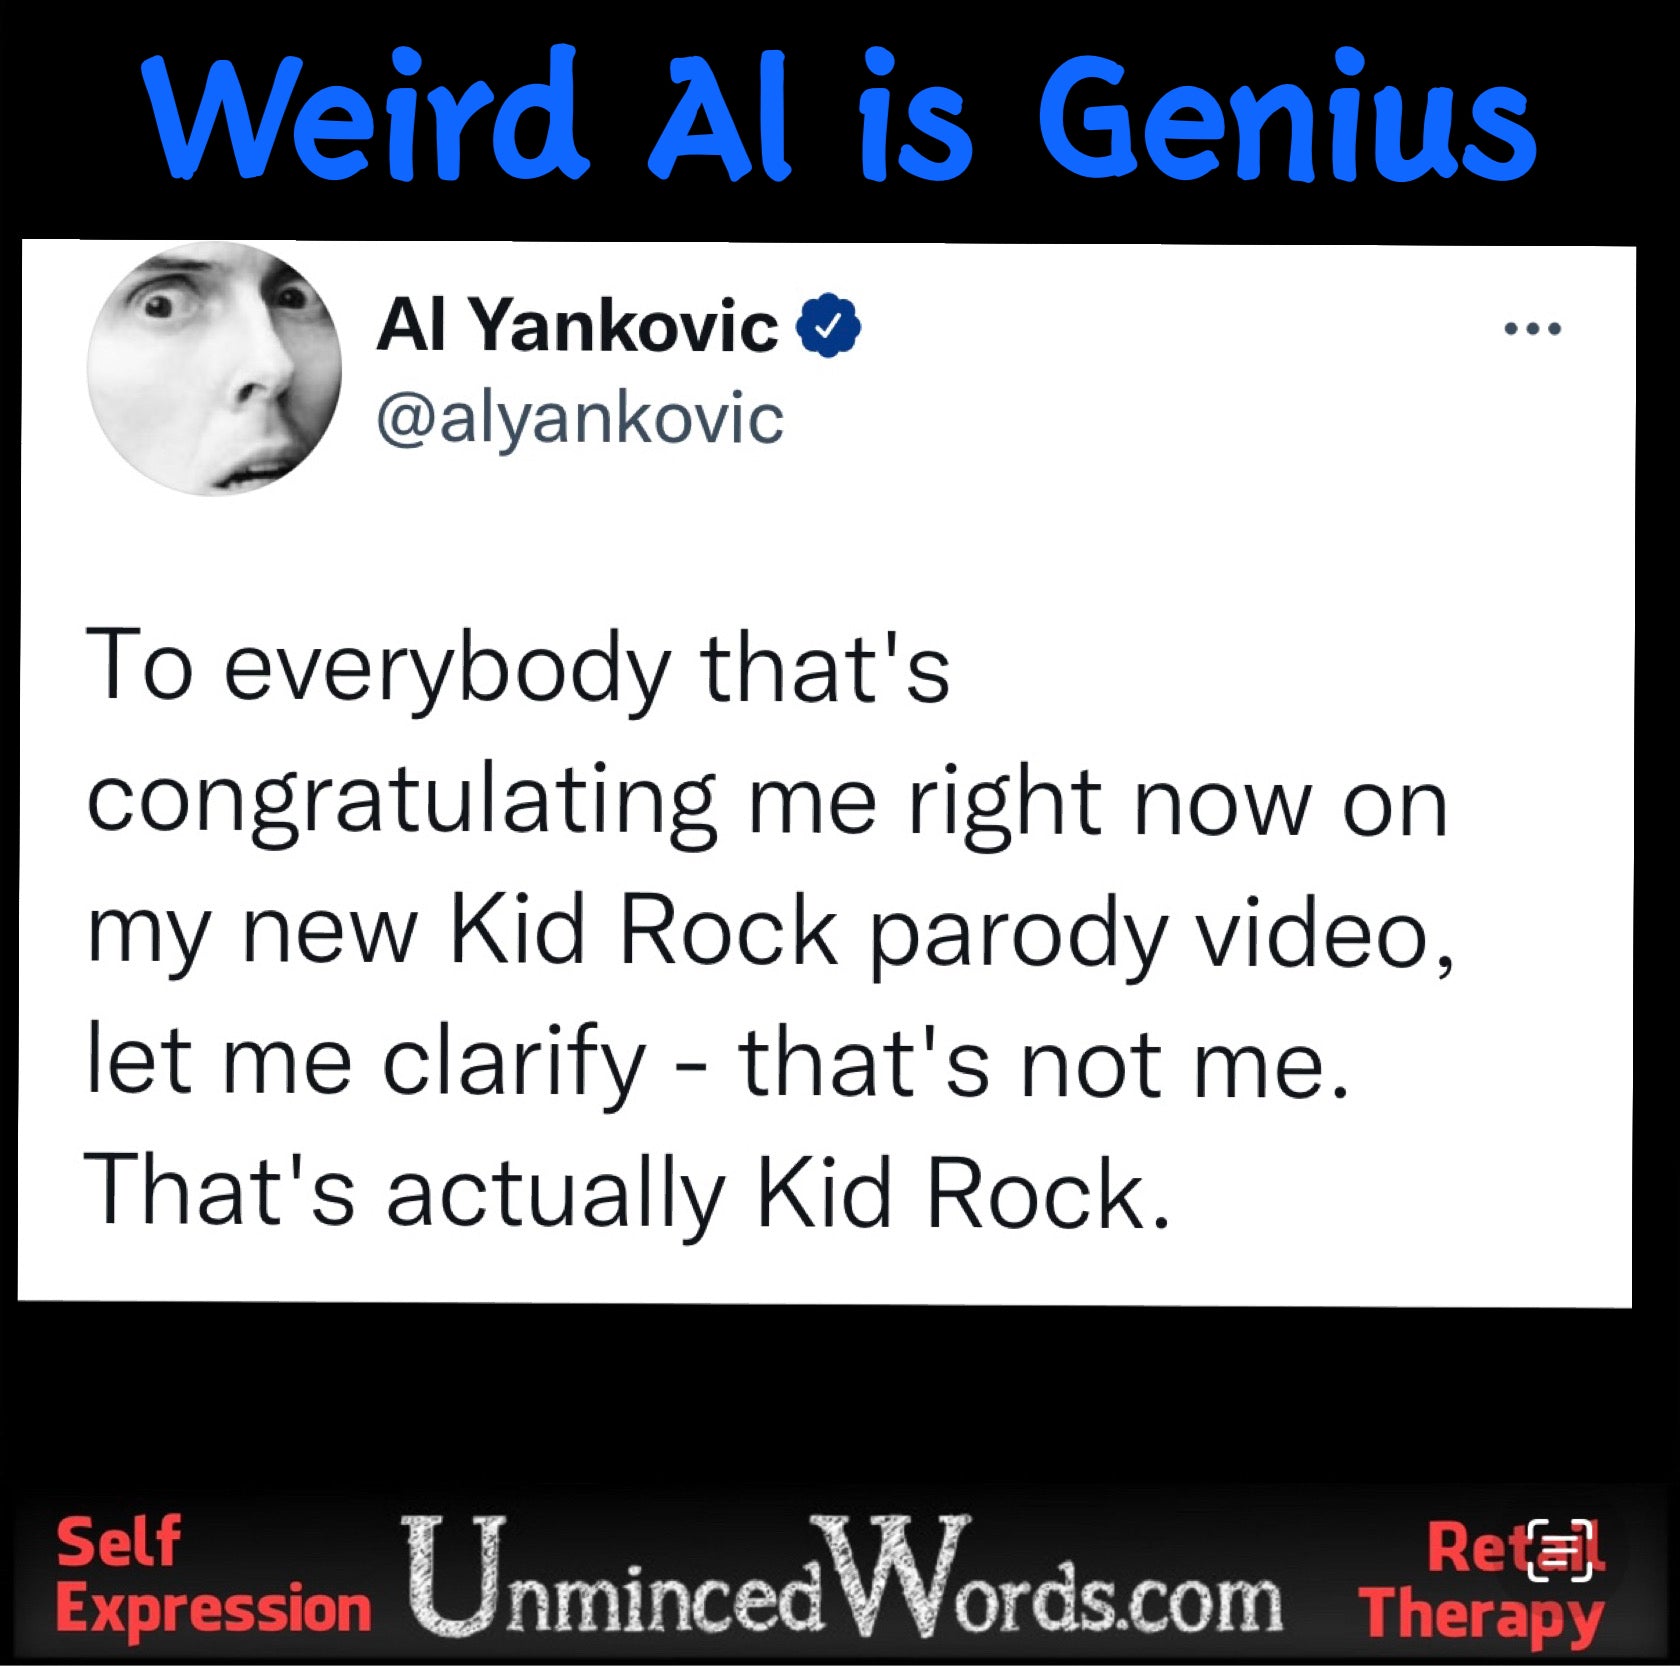 Weird Al is genius